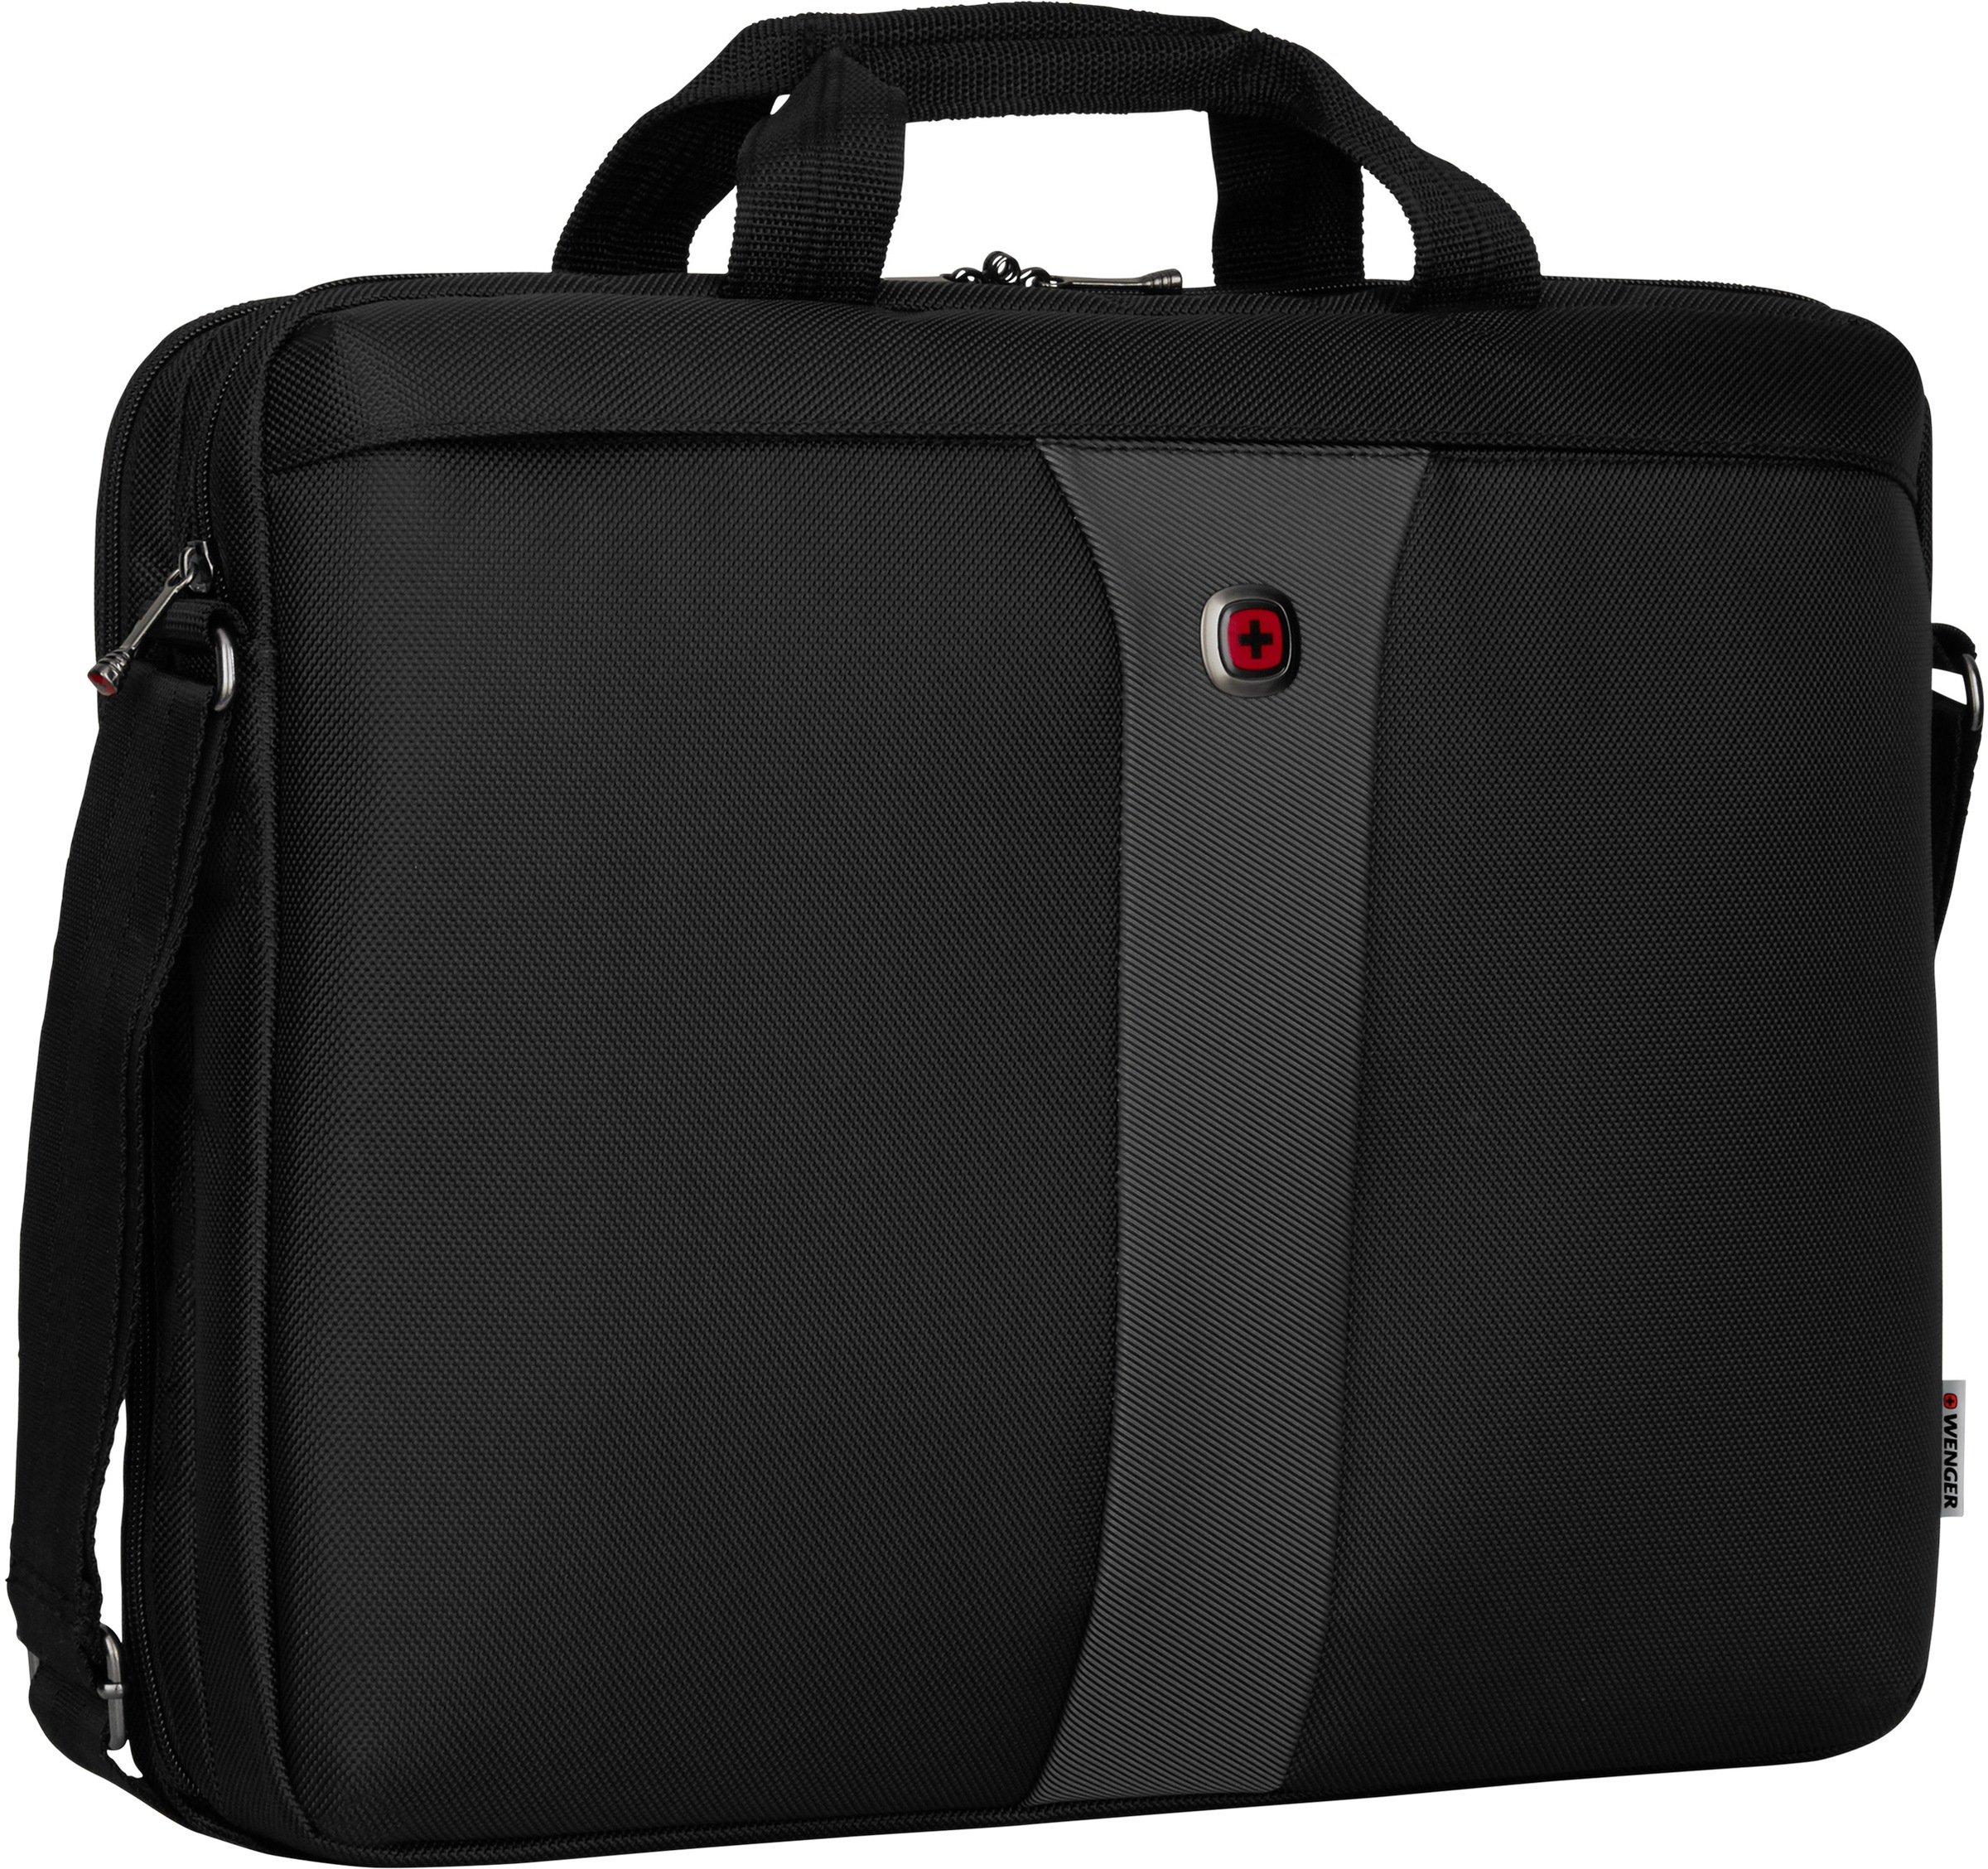 Wenger Laptoptasche »Legacy, schwarz/grau«, mit 17-Zoll Laptopfach und ShockGuard Schutzsystem